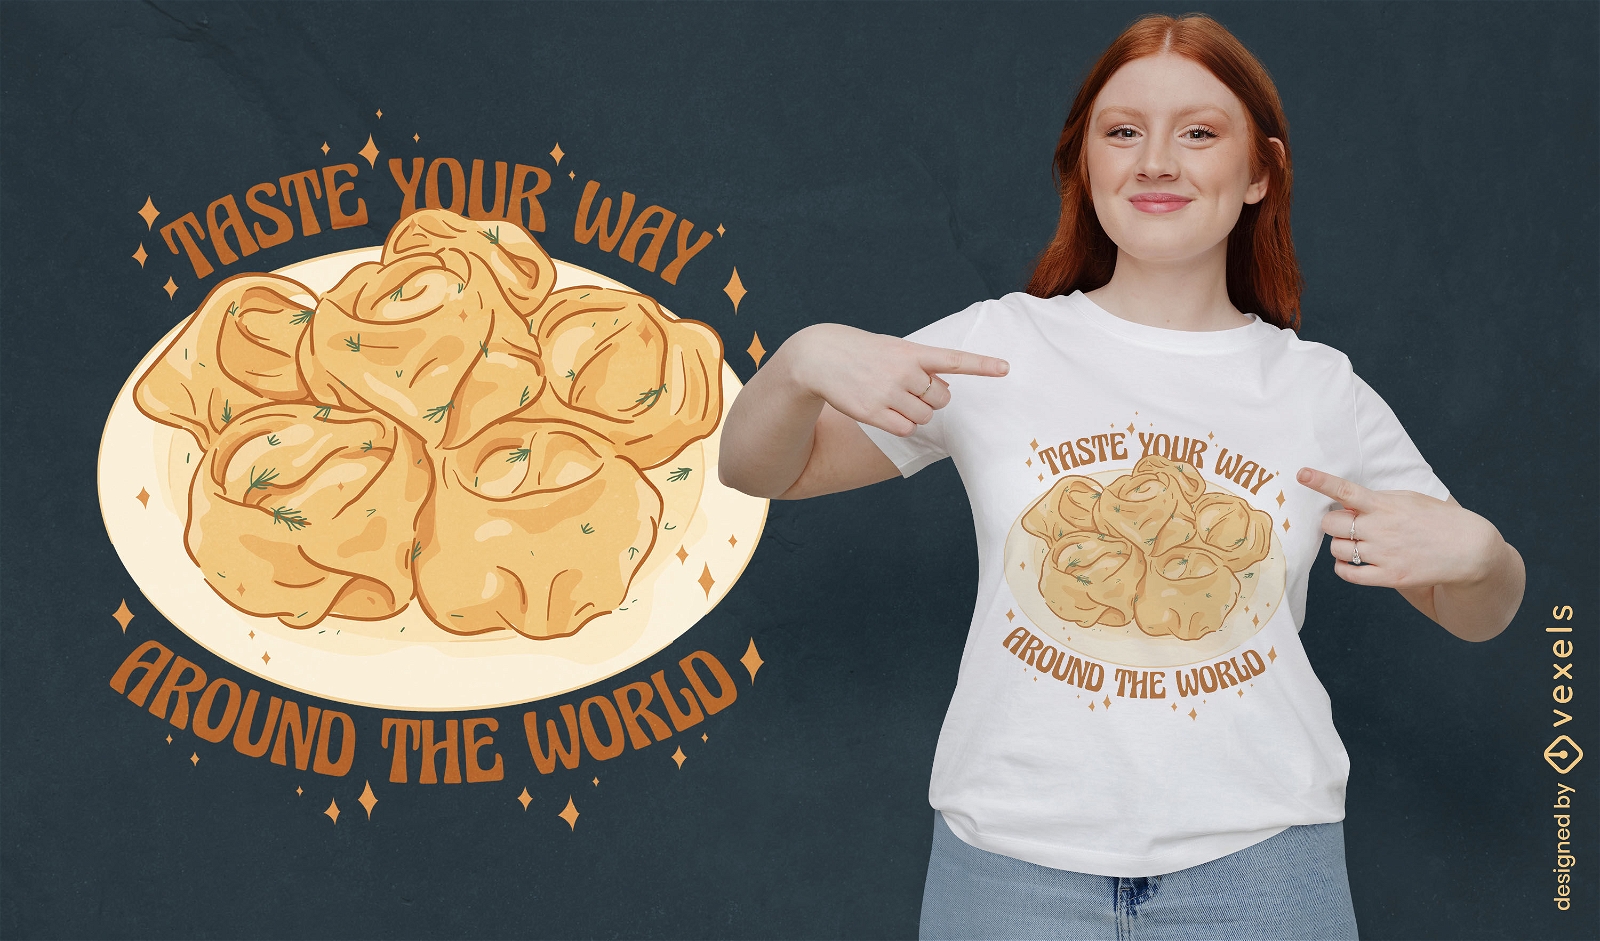 Prove o seu caminho ao redor do design de camiseta de comida do mundo